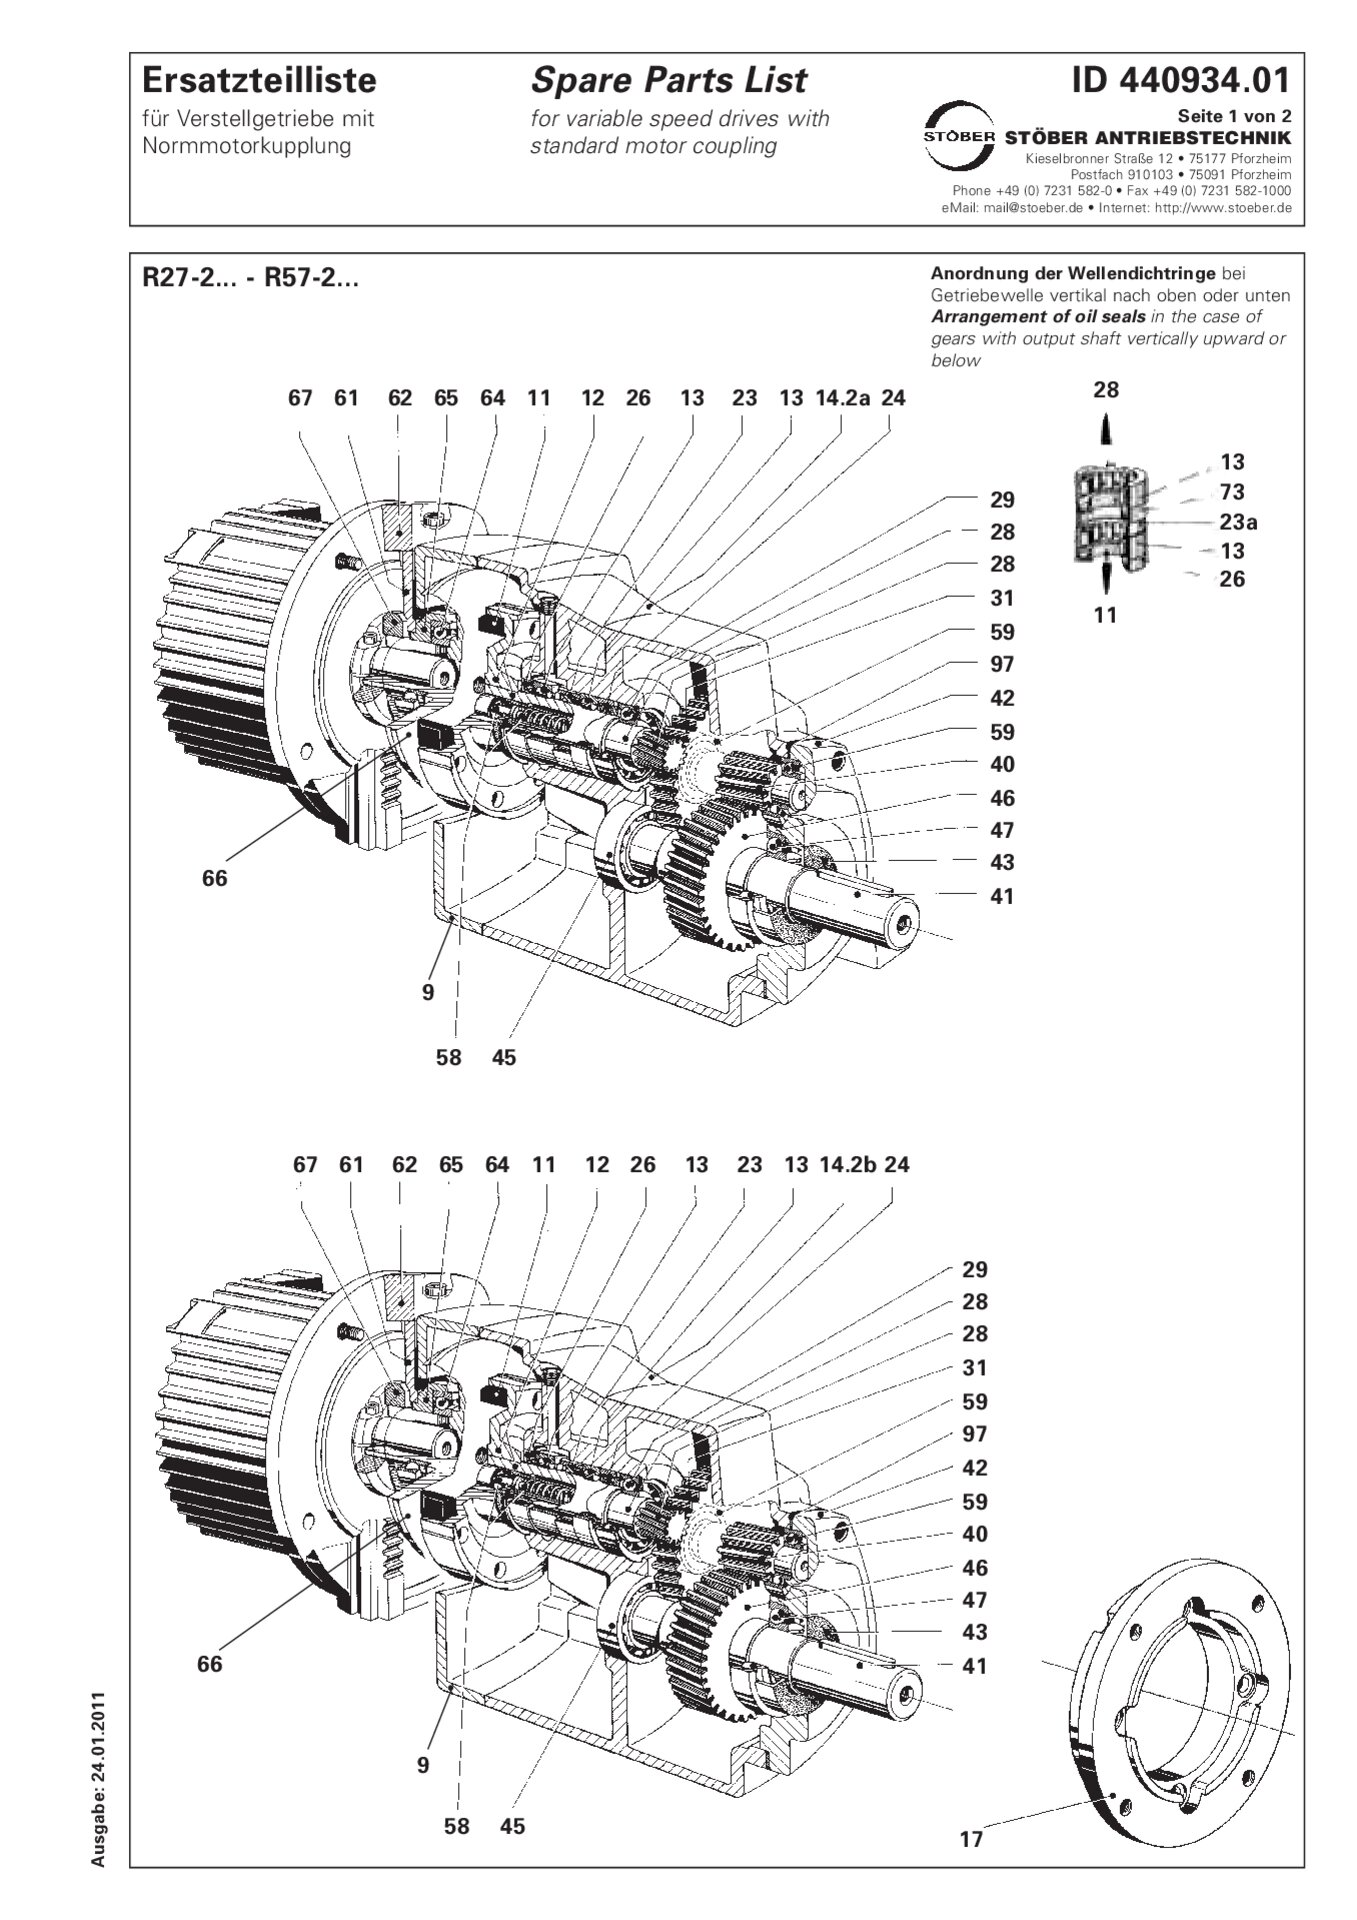 Ersatzteilliste R27-2/R37-2/R47-2/R57-2 mit Normmotorkupplung